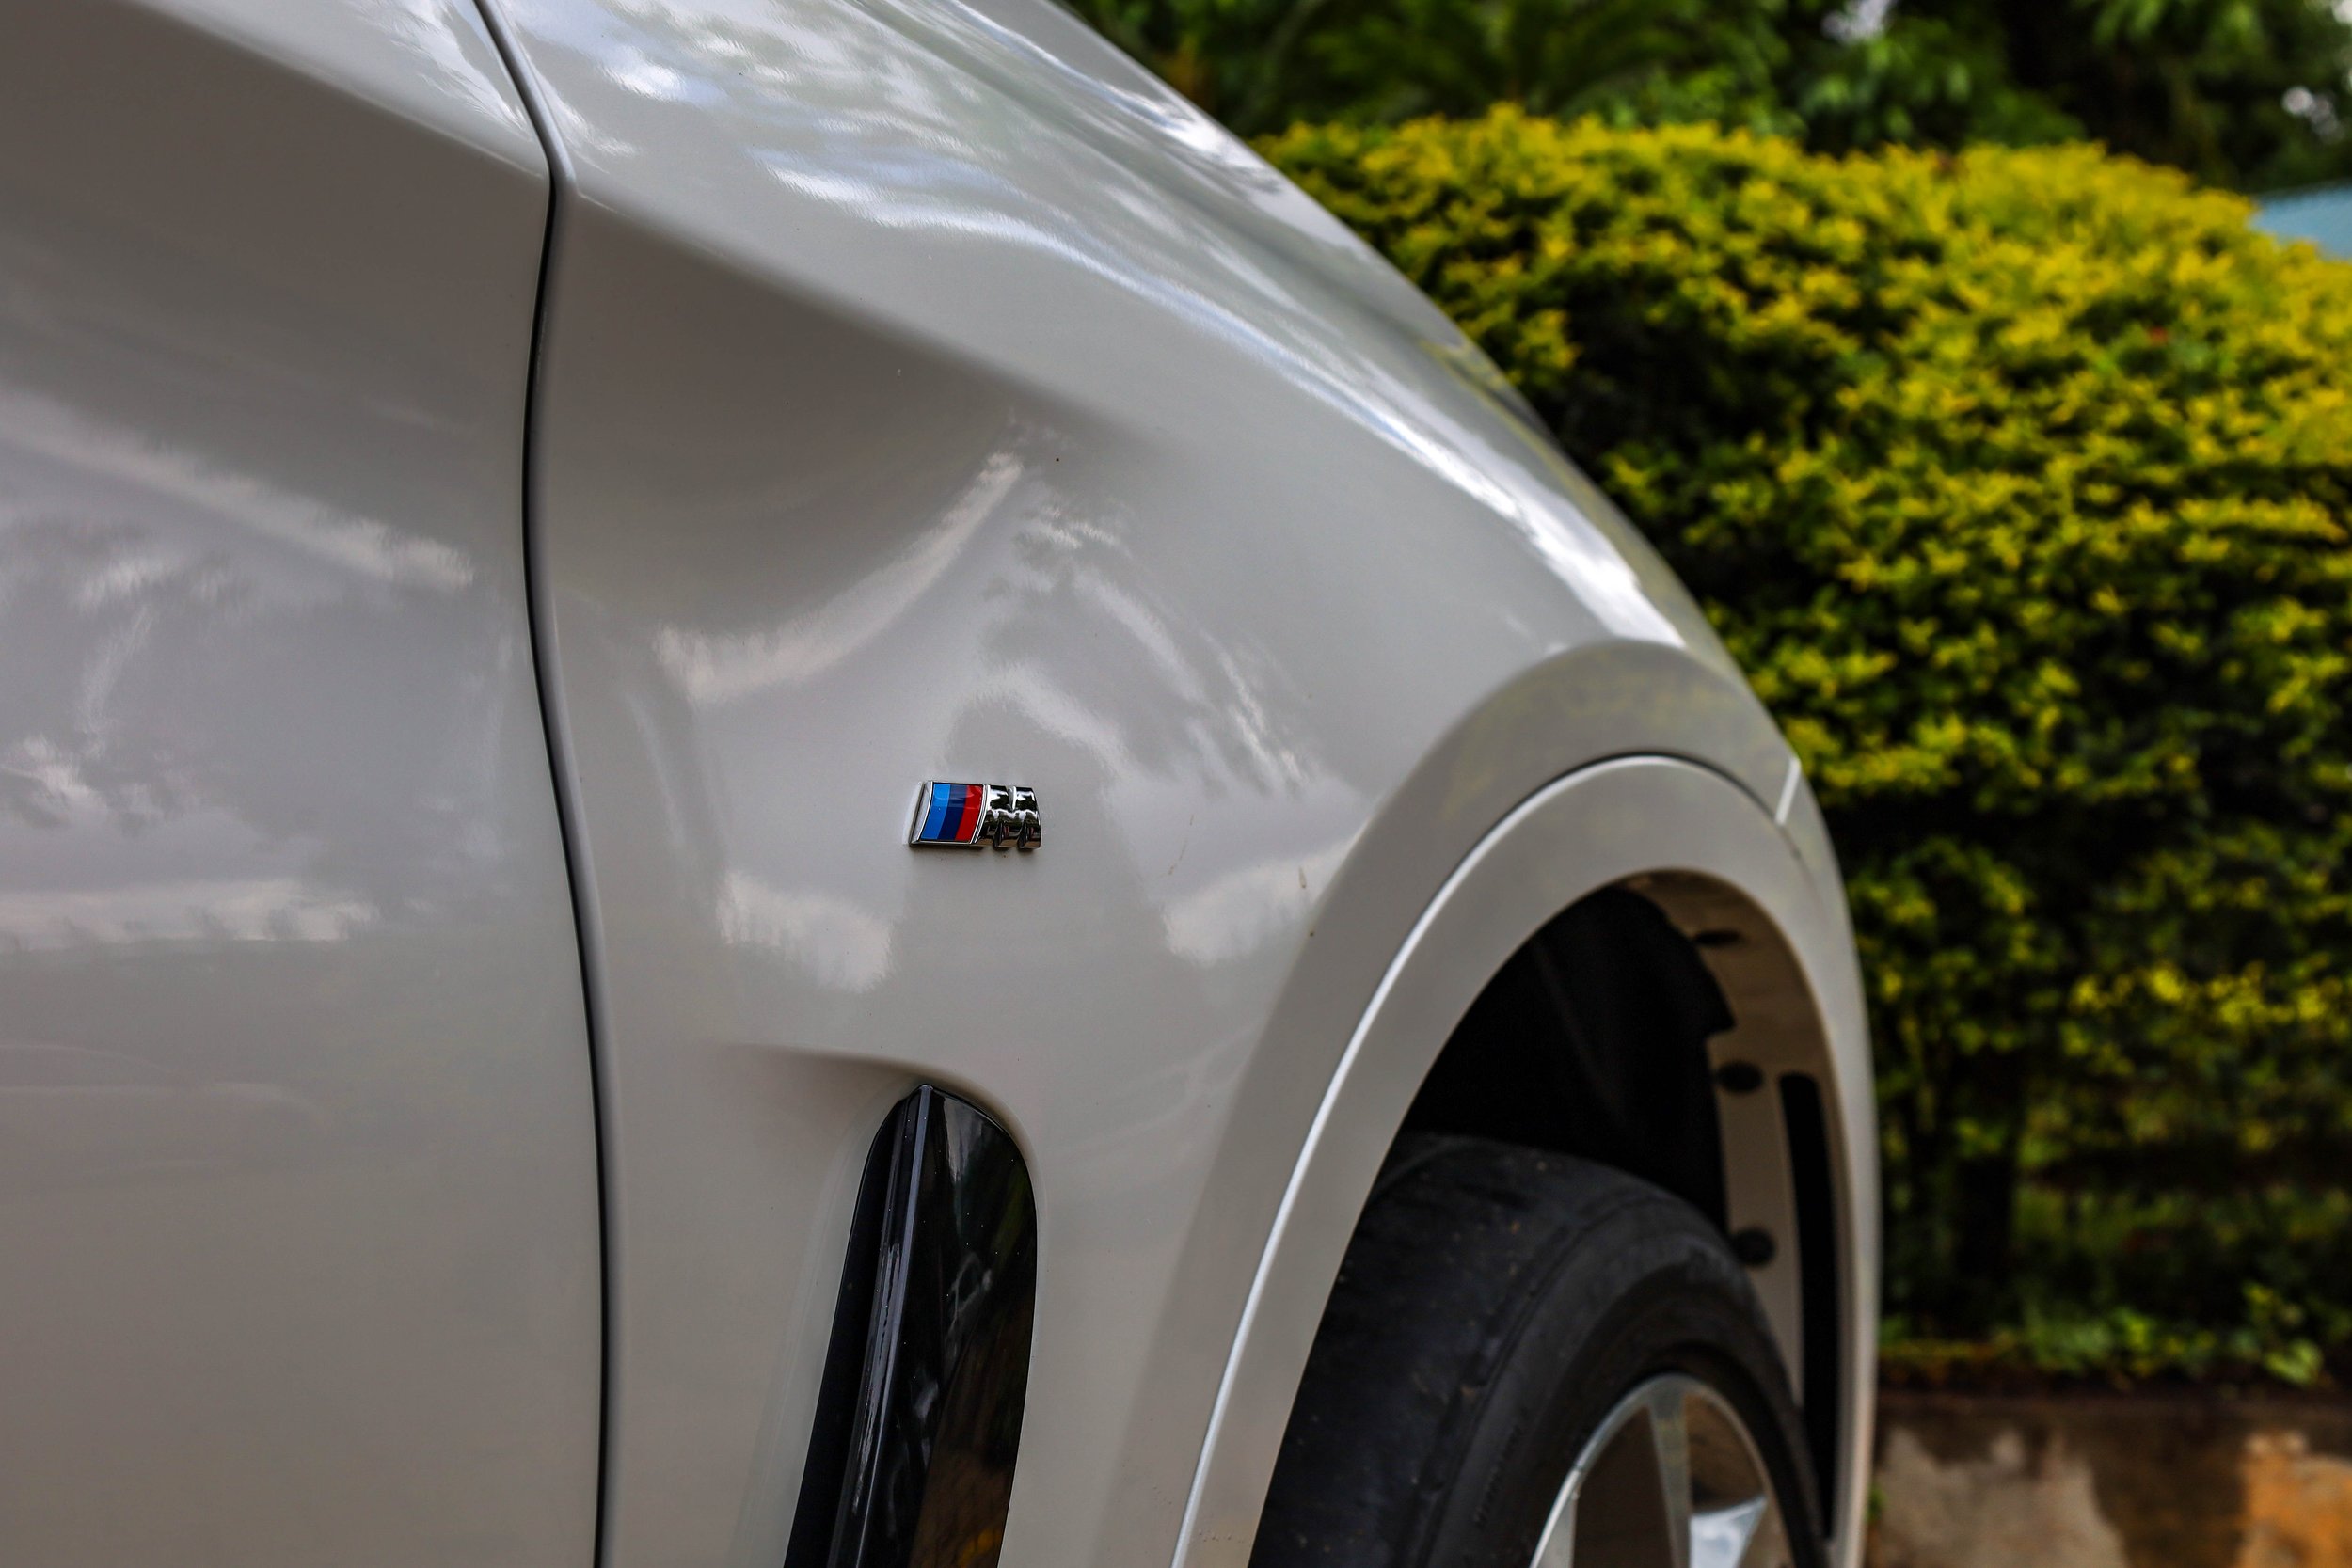 The BMW X6 — MASCARDI